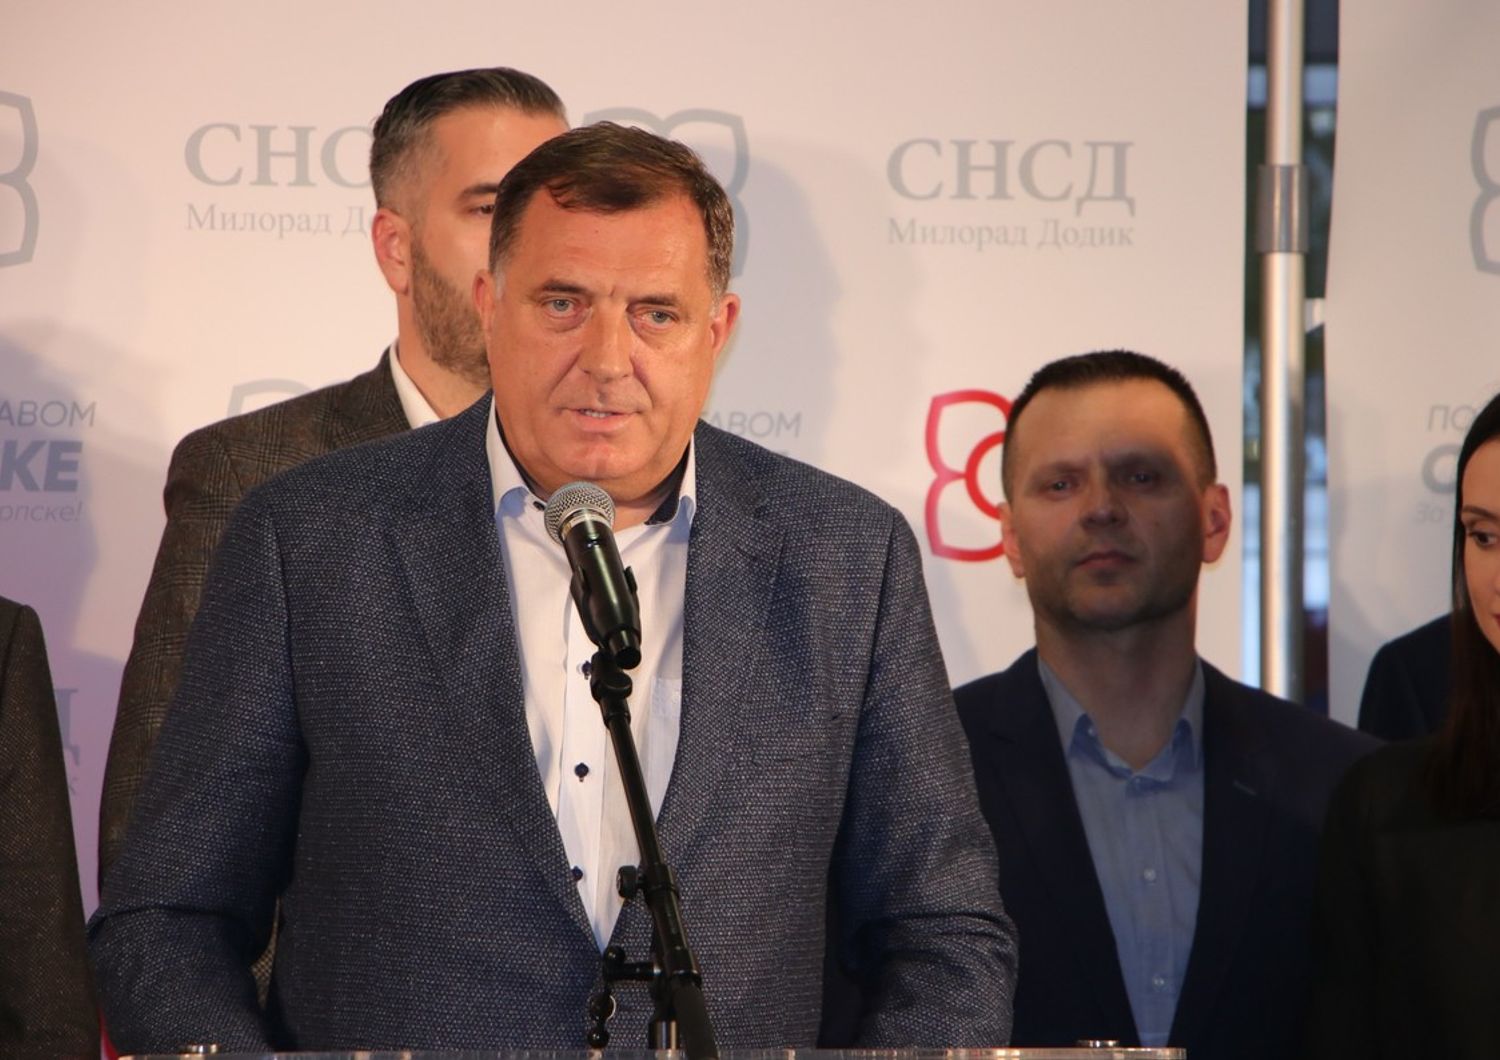 &nbsp;Milorad Dodik